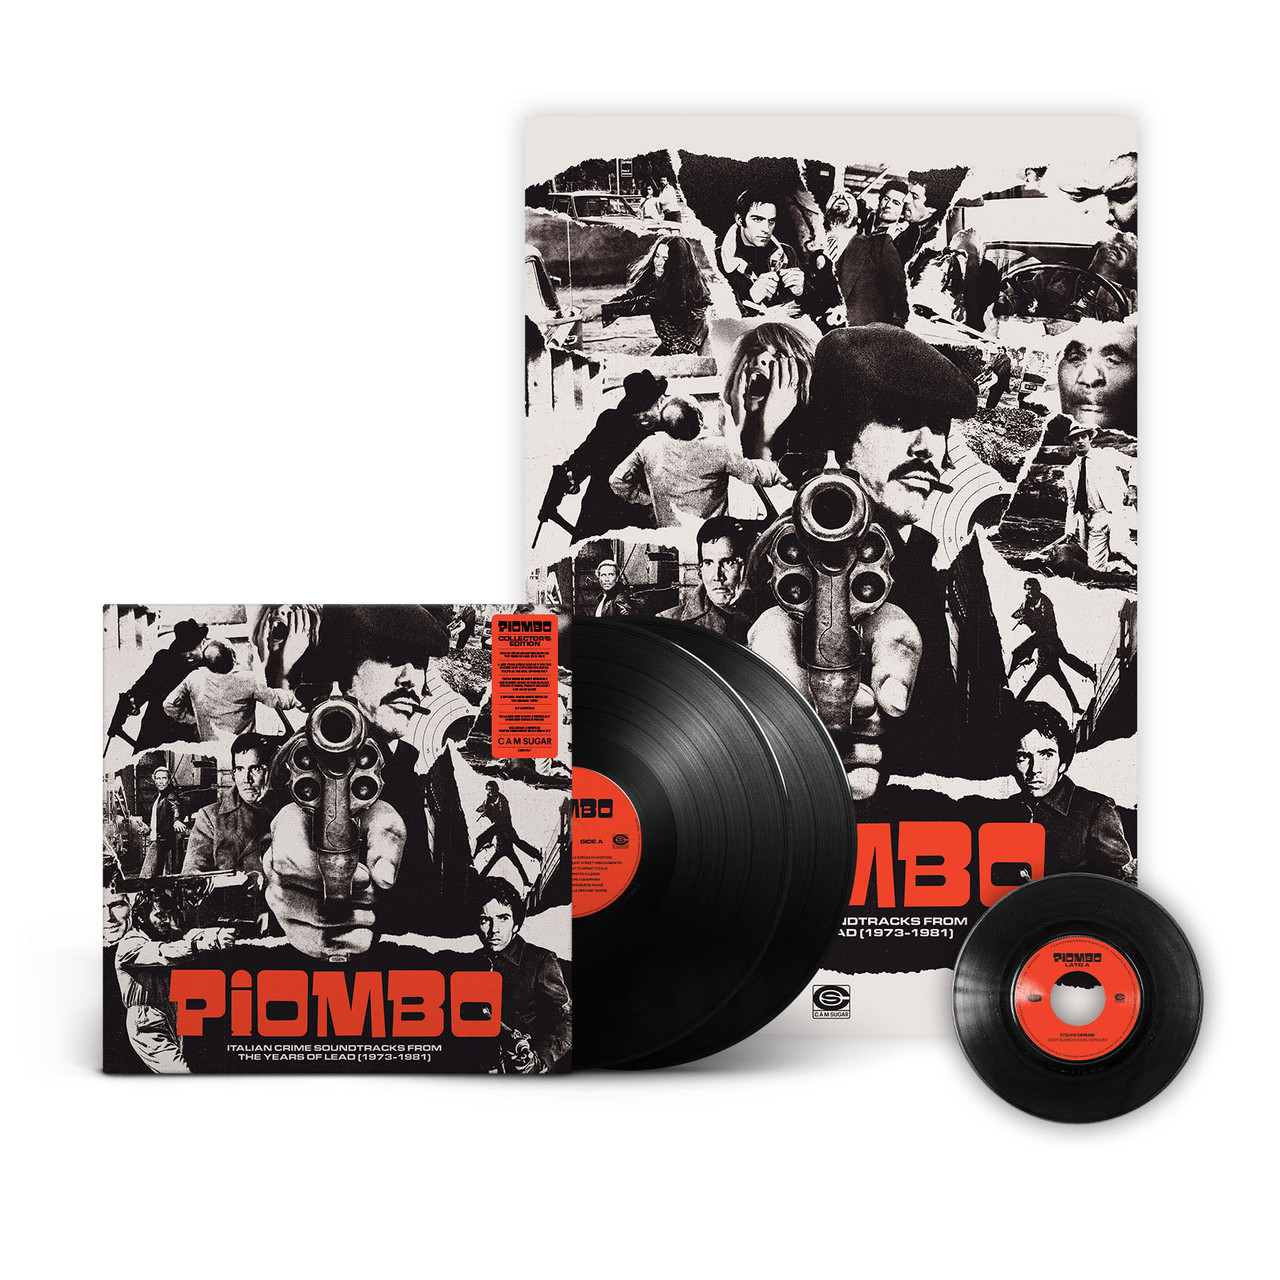 이탈리아 범죄물 영화음악 모음집 (PIOMBO: Italian Crime Soundtracks from the Years of Lead 1973-1981) [2LP+7인치 싱글 Vinyl]